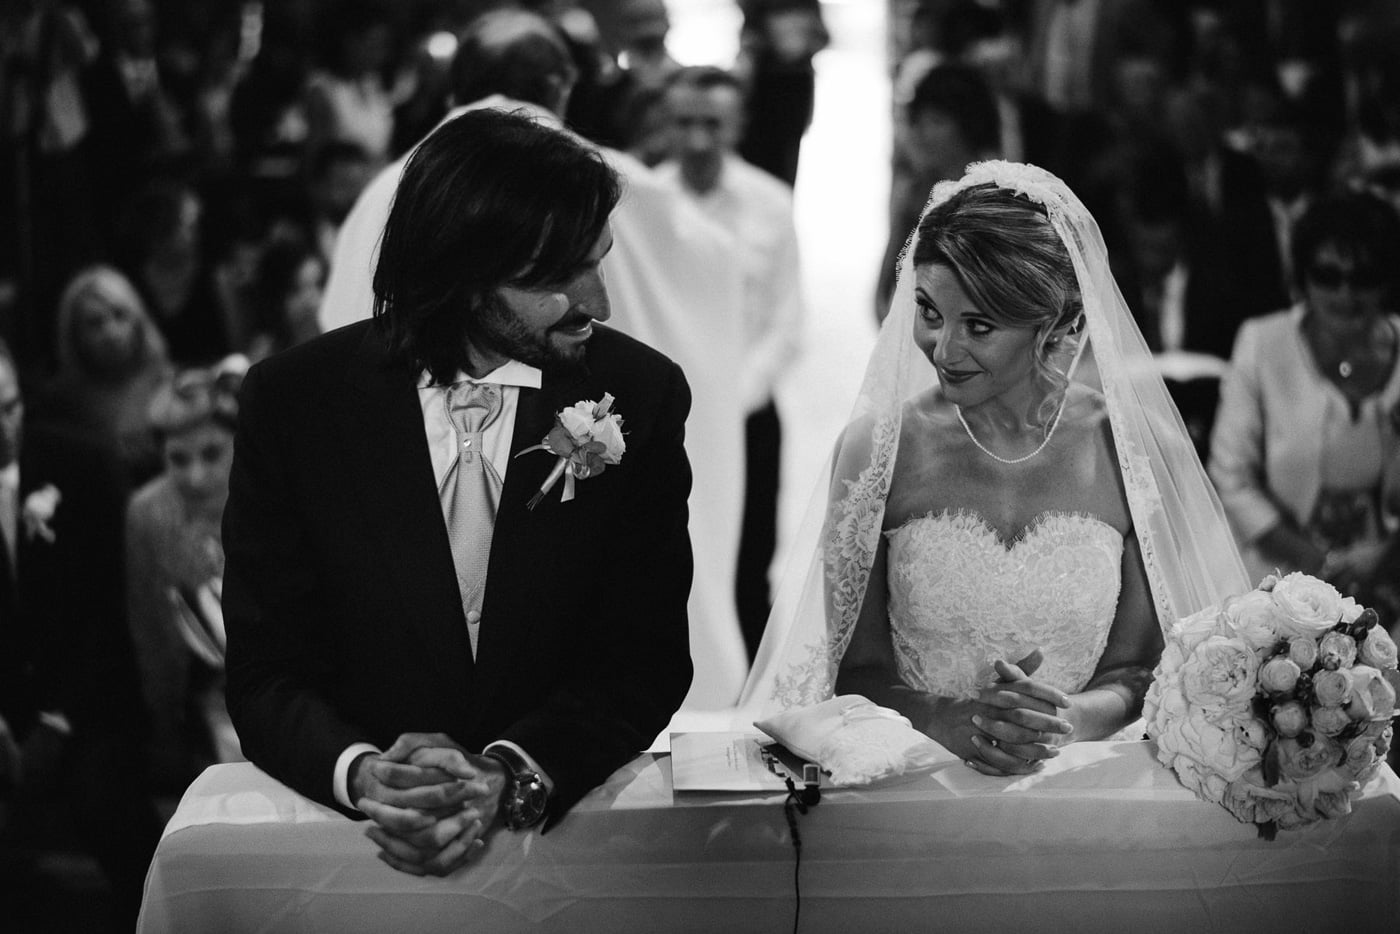 Andrea & Francesca | Wedding at Borgo San Luigi by Federico Pannacci 48